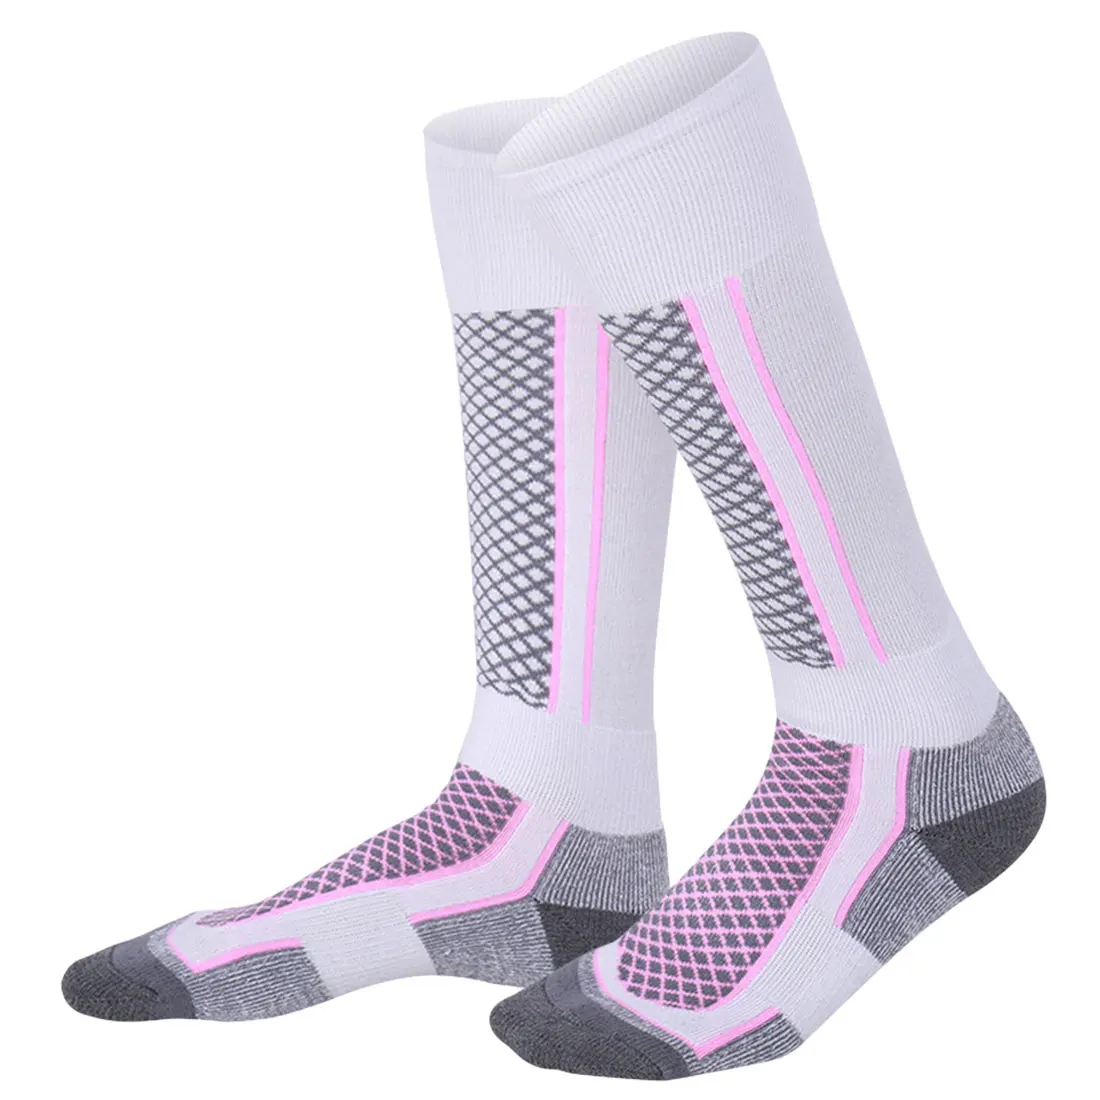 Для мужчин Для женщин зимние теплые Термальность Лыжные носки, спортивные сноуборд Велоспорт Лыжный Спорт футбольные носки гетры толстые длинные хлопковые носки - Цвет: Pink White